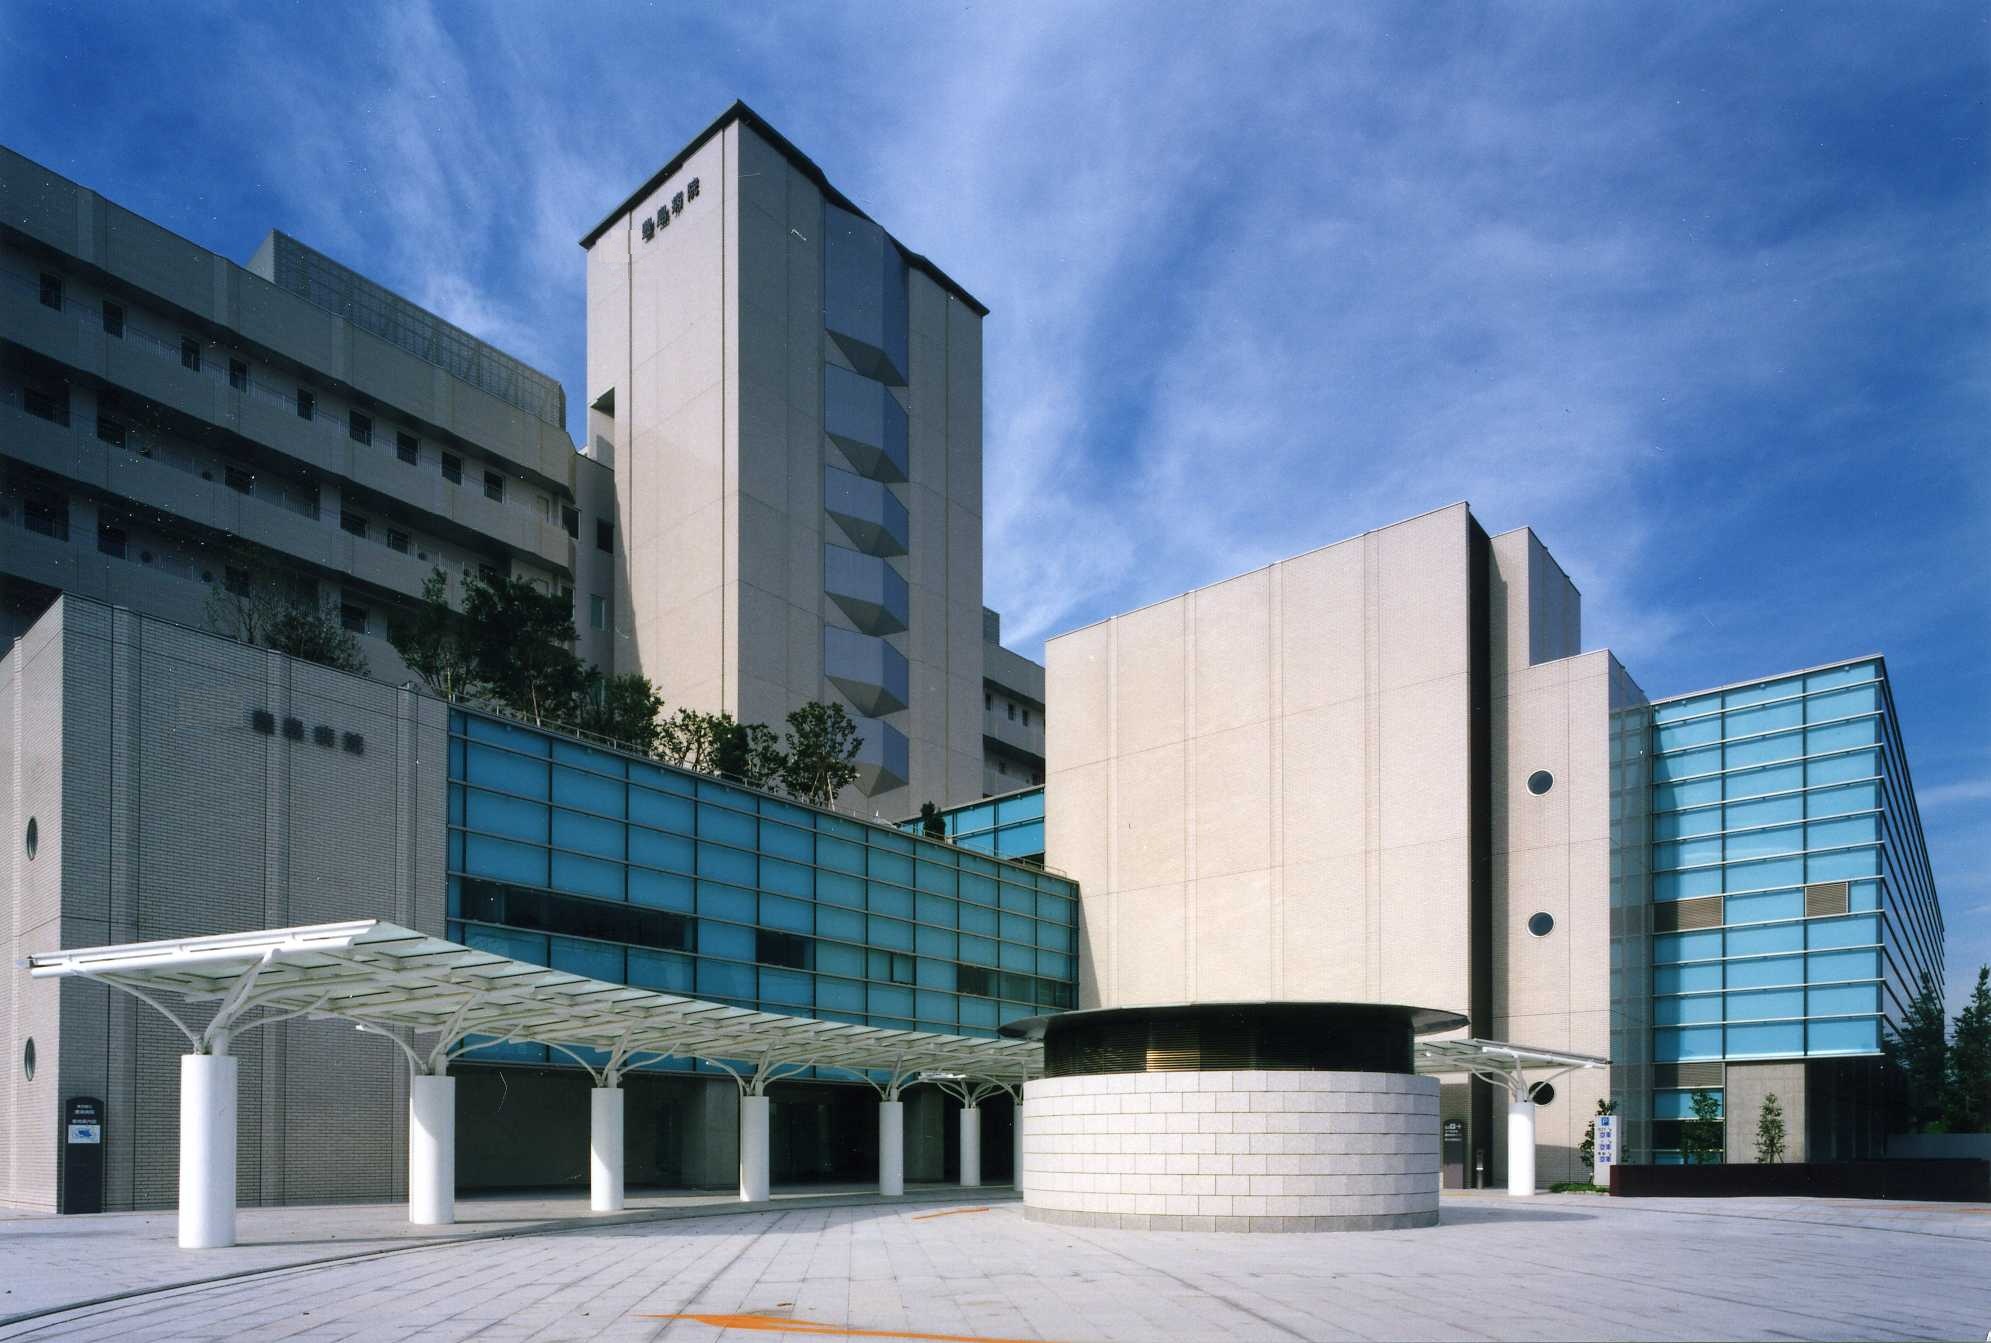 豊島病院は、区西北部保健医療圏（豊島区、北区、板橋区、練馬区）における中核病院として、地域の医療機関（診療所等）との連携を一層推進するとともに、医療の継続性を確保し、地域住民の皆さまに適切な医療を提供していきます。